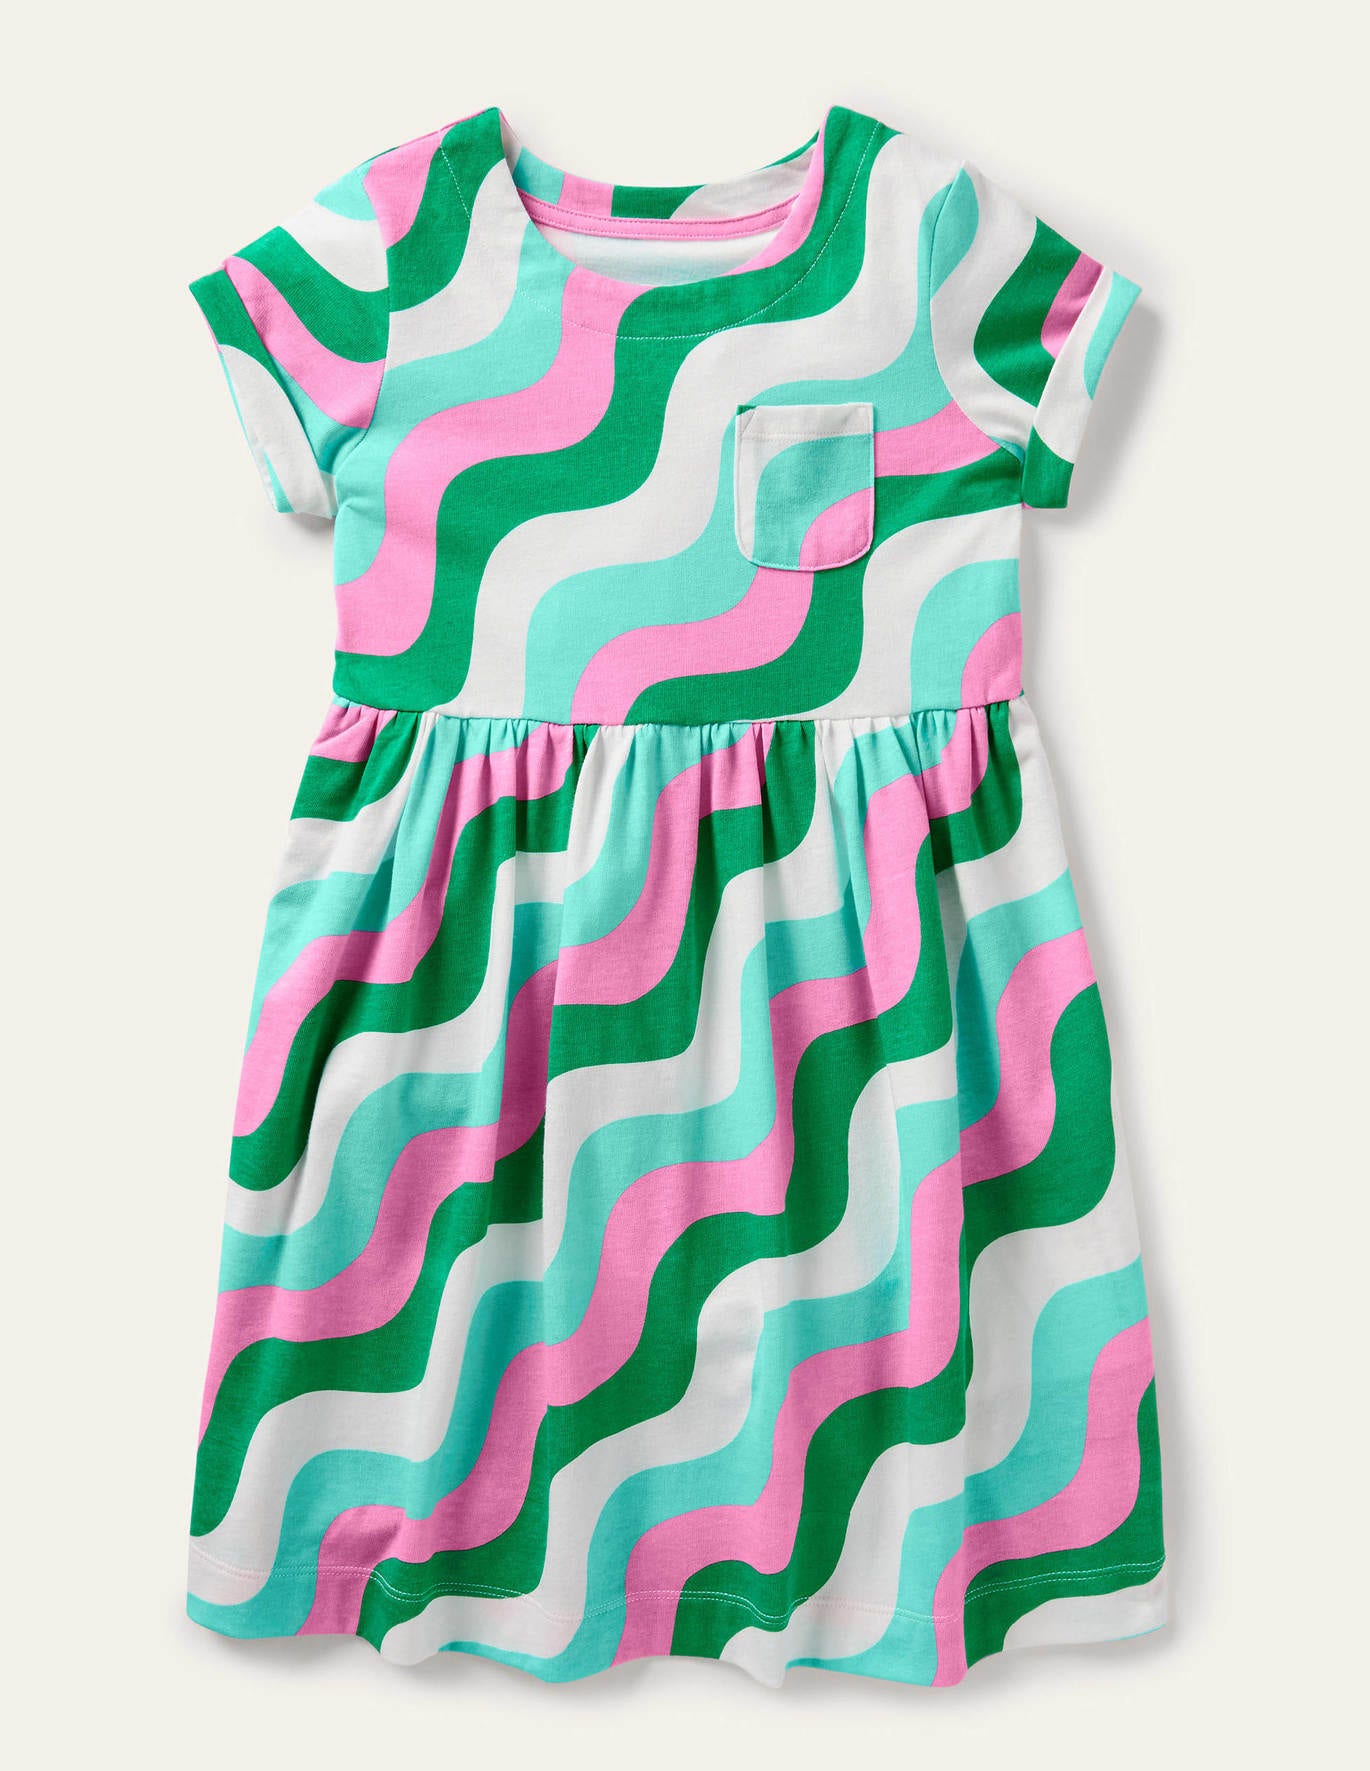 Boden Fun Jersey Dress - Sapling Green Wave